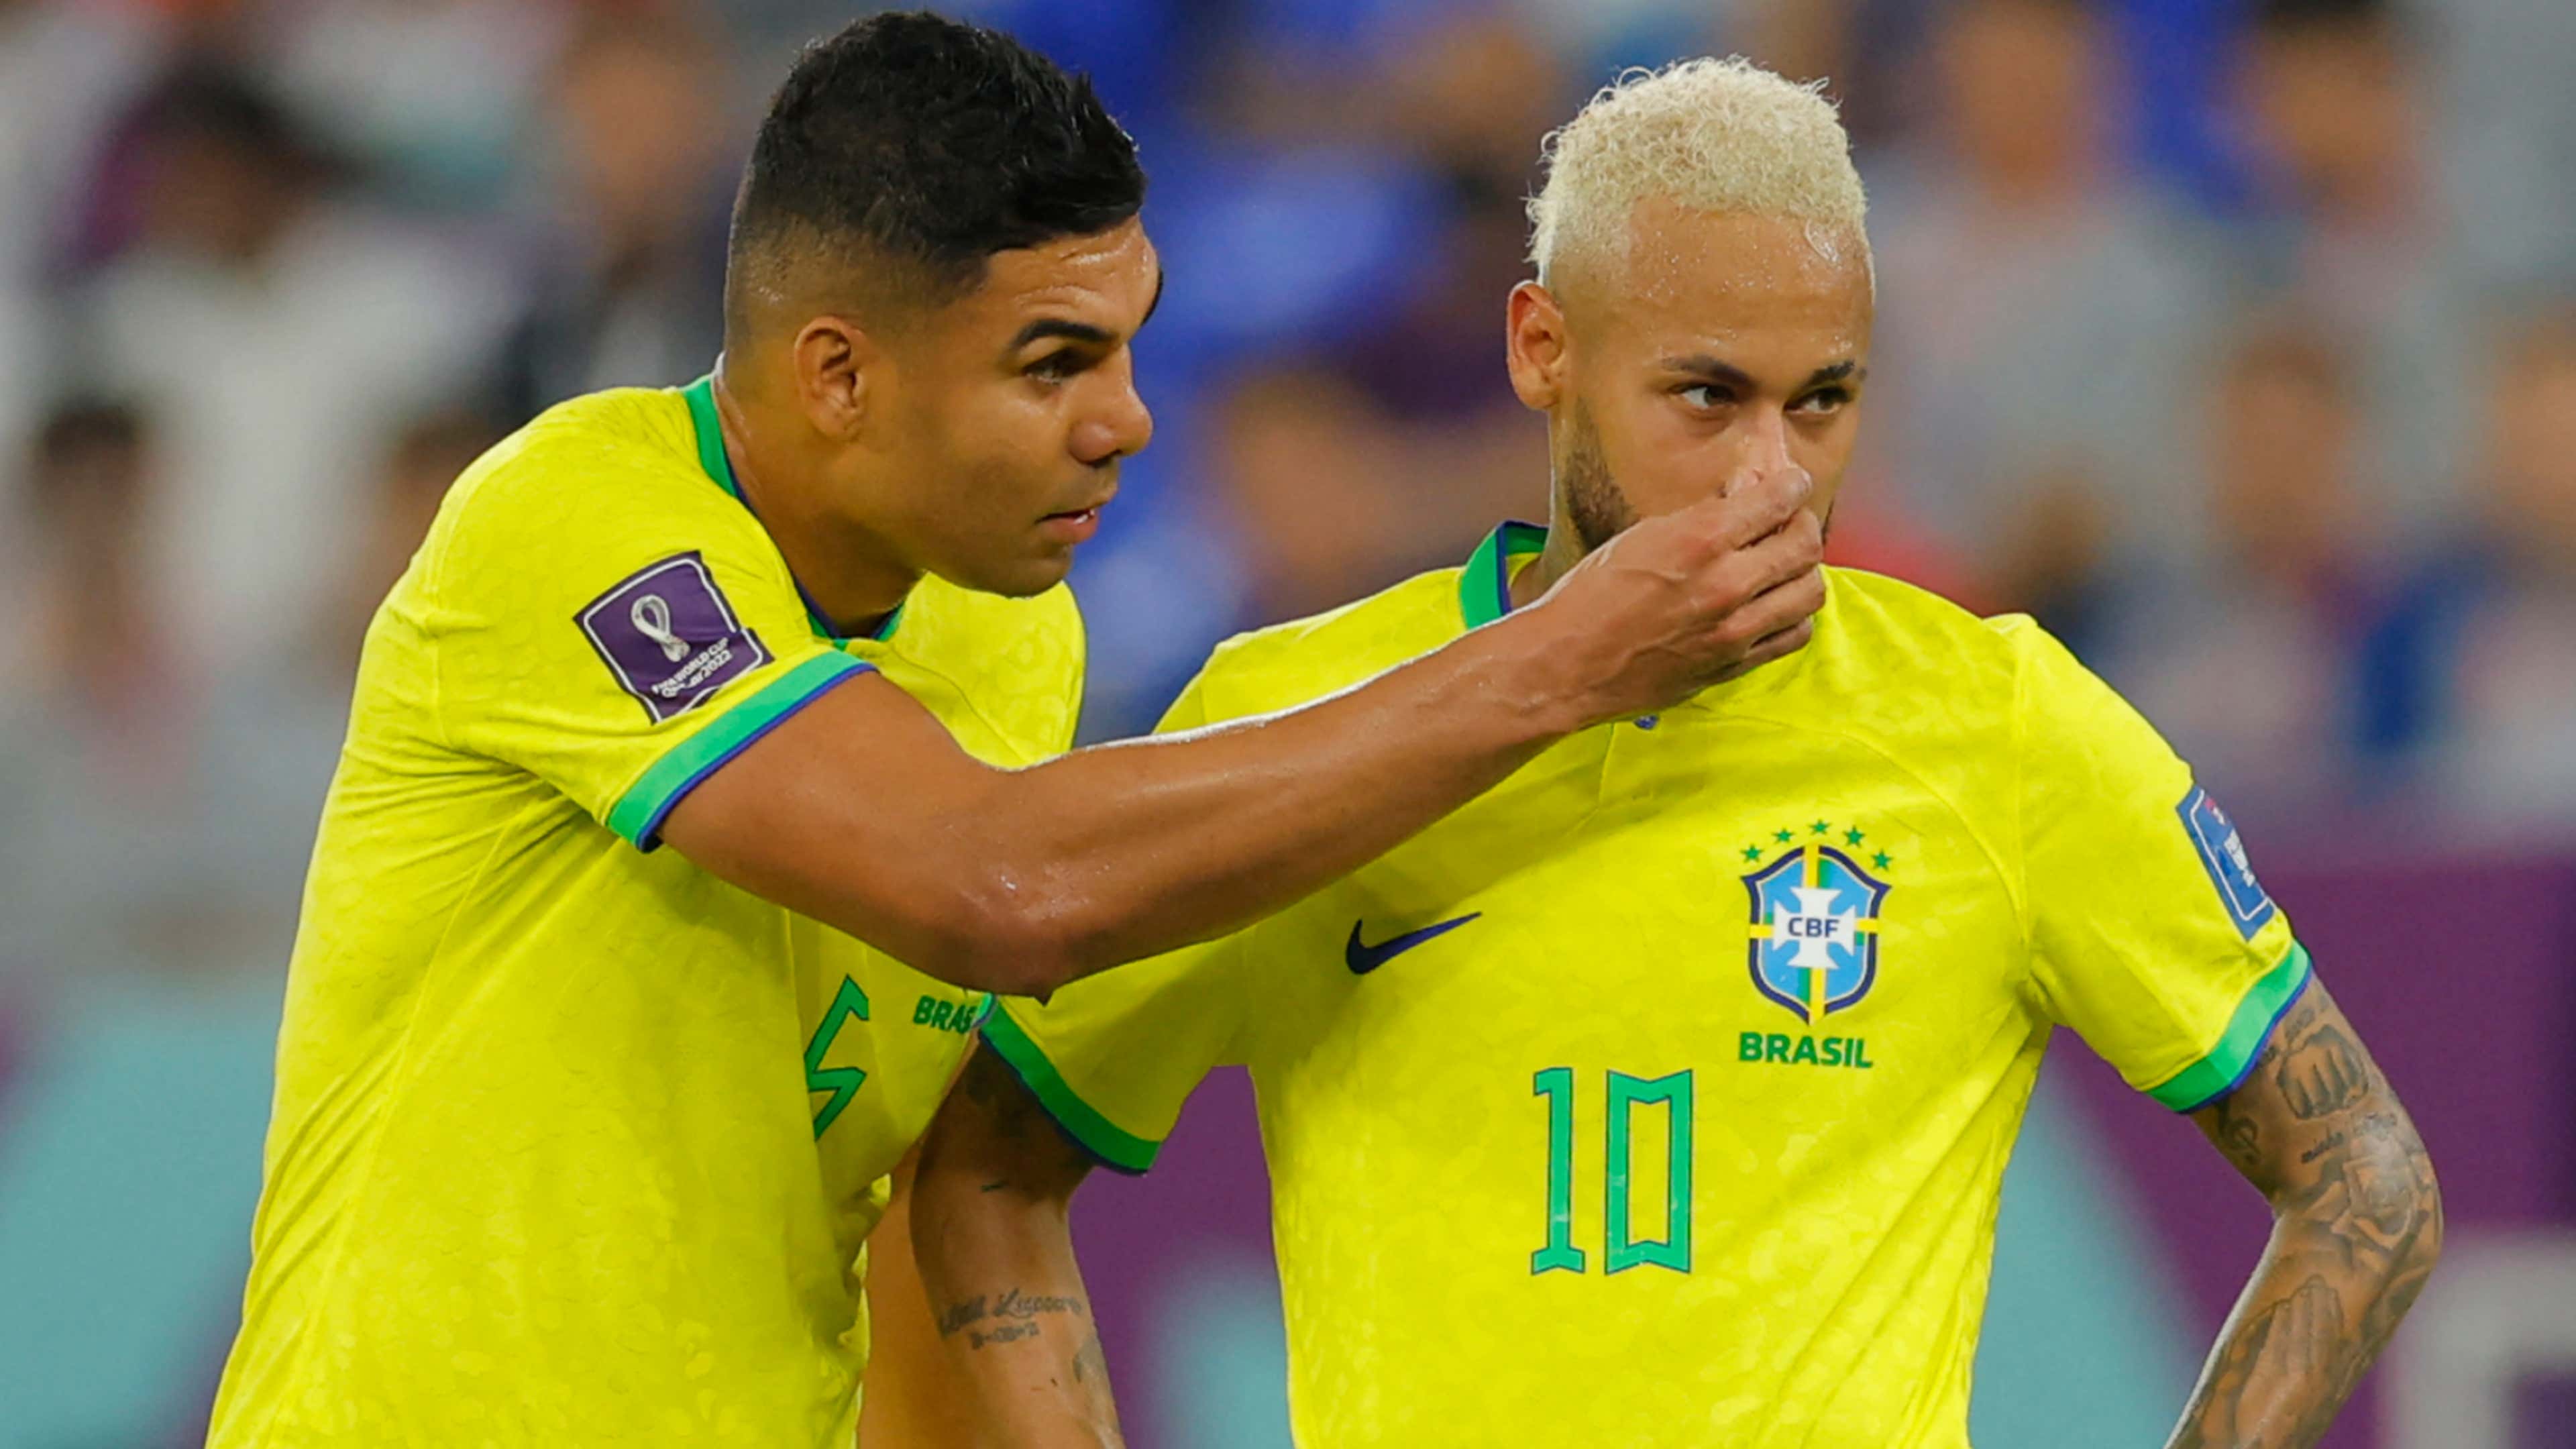 Nova camisa da seleção brasileira: quando será lançada, fotos que já  vazaram, quanto custa e mais do uniforme do Brasil